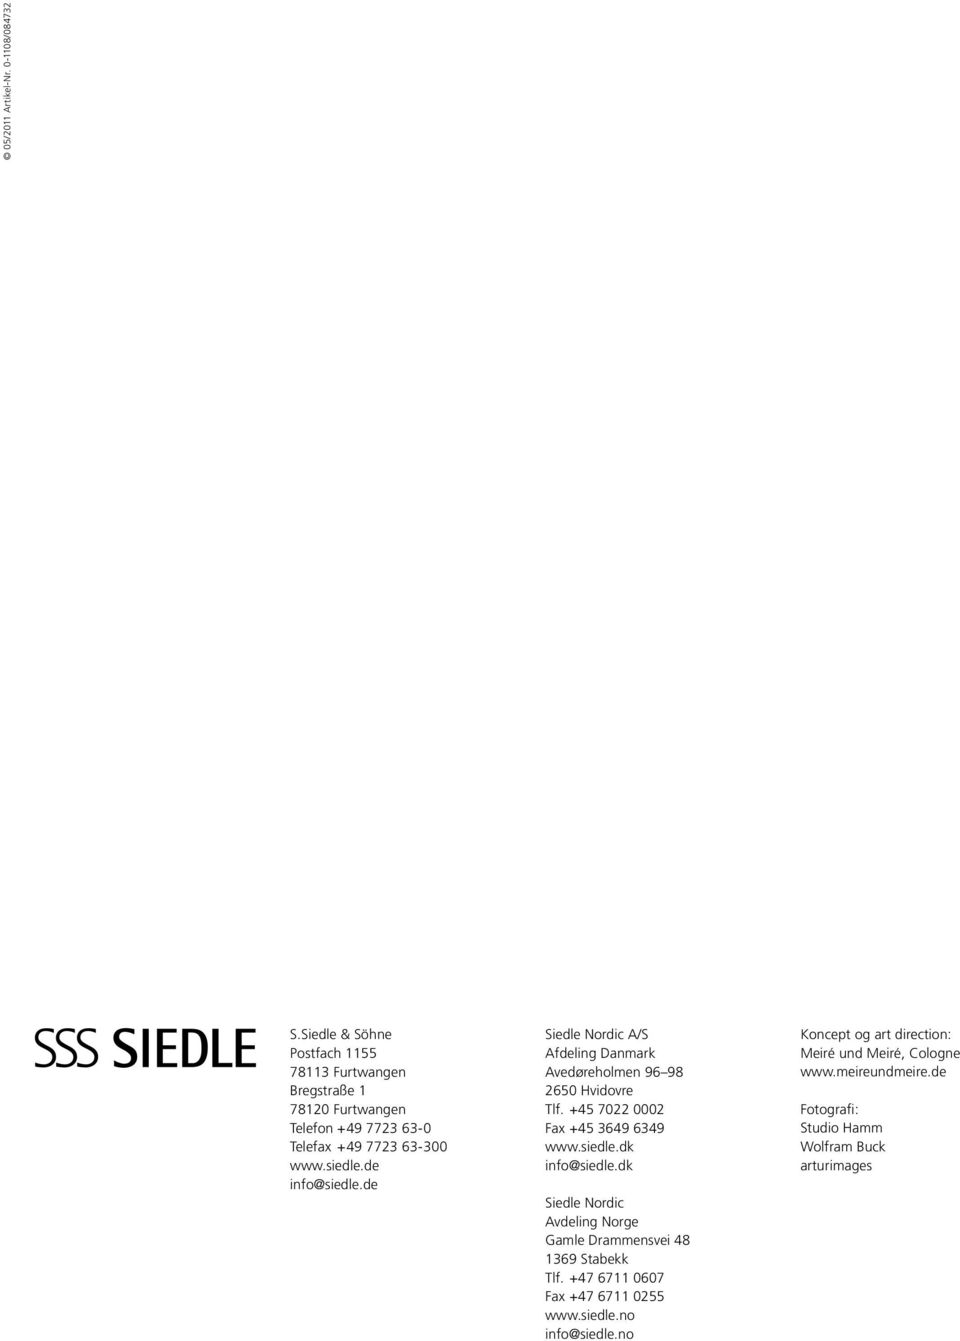 de info@siedle.de Siedle Nordic A/S Afdeling Danmark Avedøreholmen 96 98 2650 Hvidovre Tlf. +45 7022 0002 Fax +45 3649 6349 www.siedle.dk info@siedle.